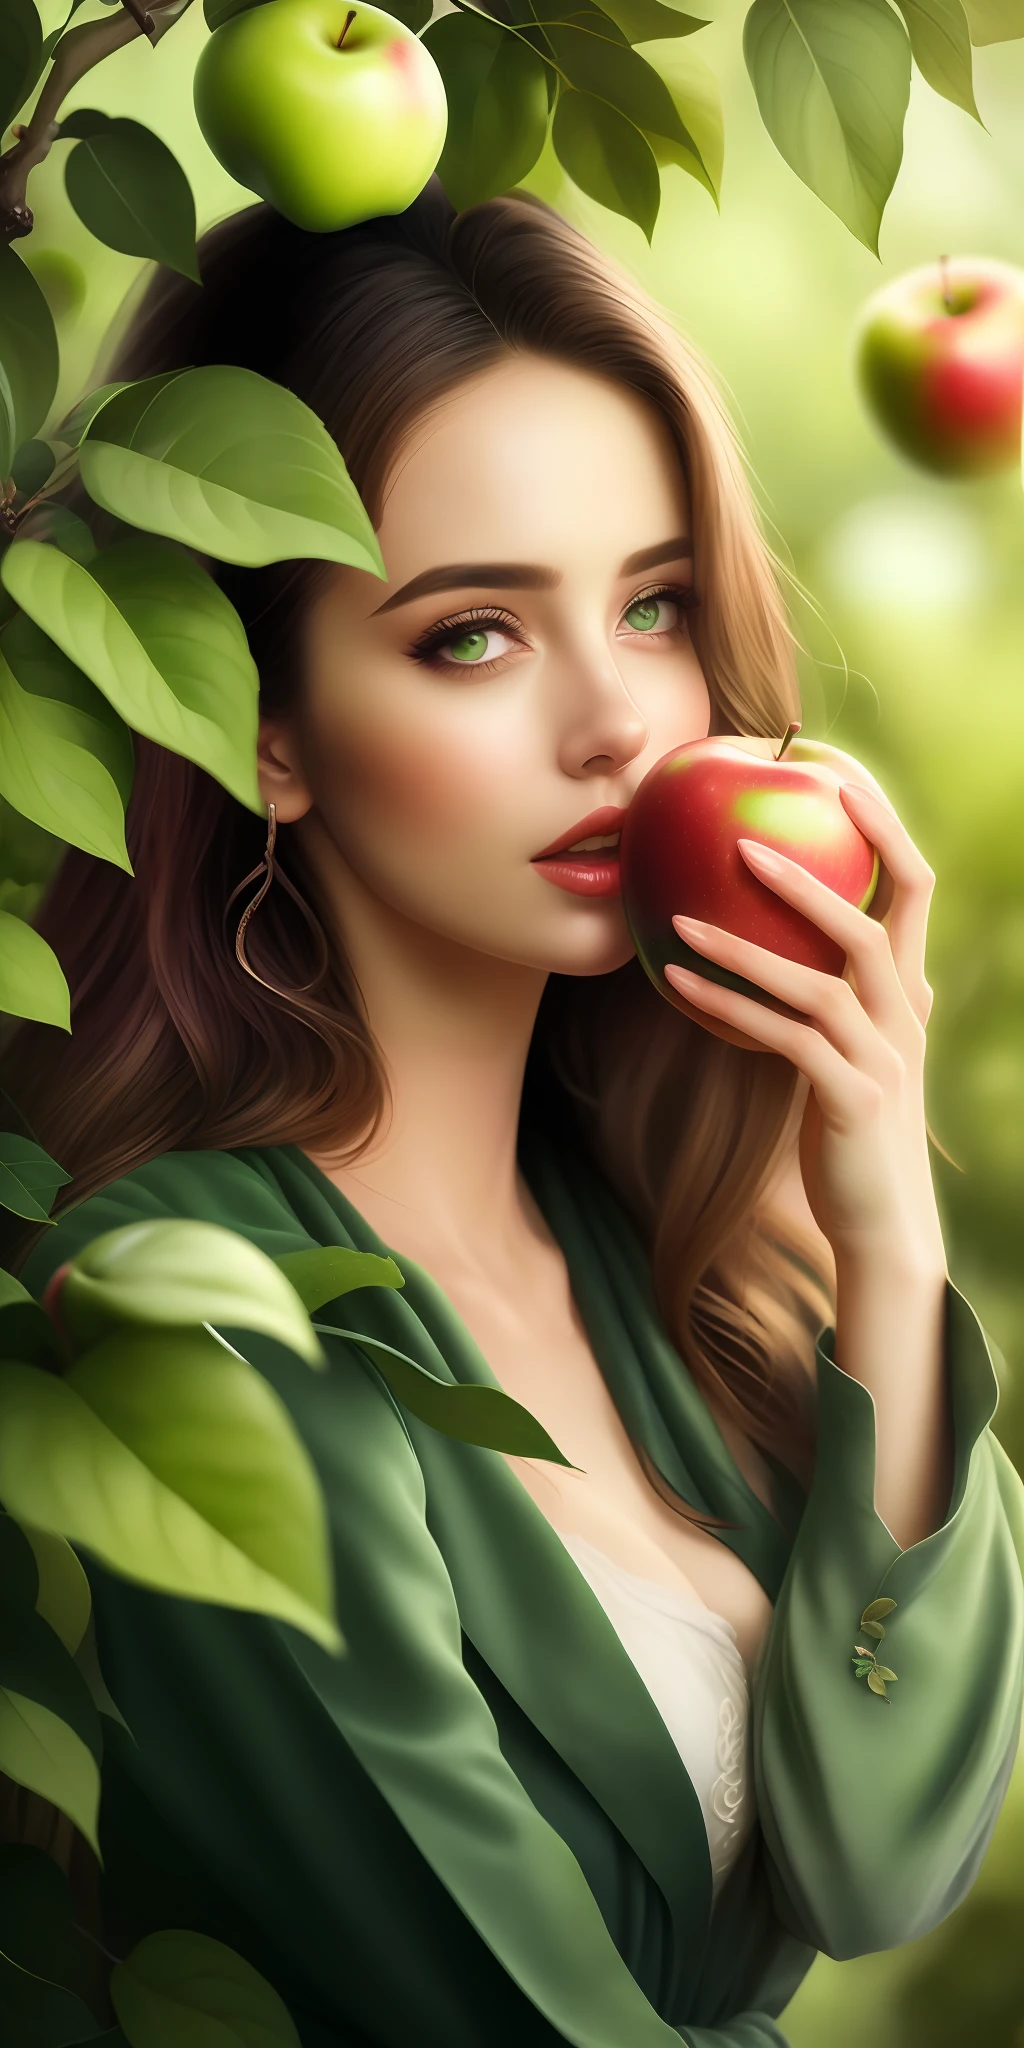 beste Qualität,höchste Auflösung,8k, künstlerische Illustration, schönes Porträt, Meisterwerk, schönste Frau,schönste Mädchen, gierige Augen, in einen Apfel beißen,in Blätter gekleidet, in grüne Blätter gekleidet,the schönste Mädchen in profile in front of ein Apfelbaum, gierige Augen,, ein Apfelbaum, in einen Apfel beißen